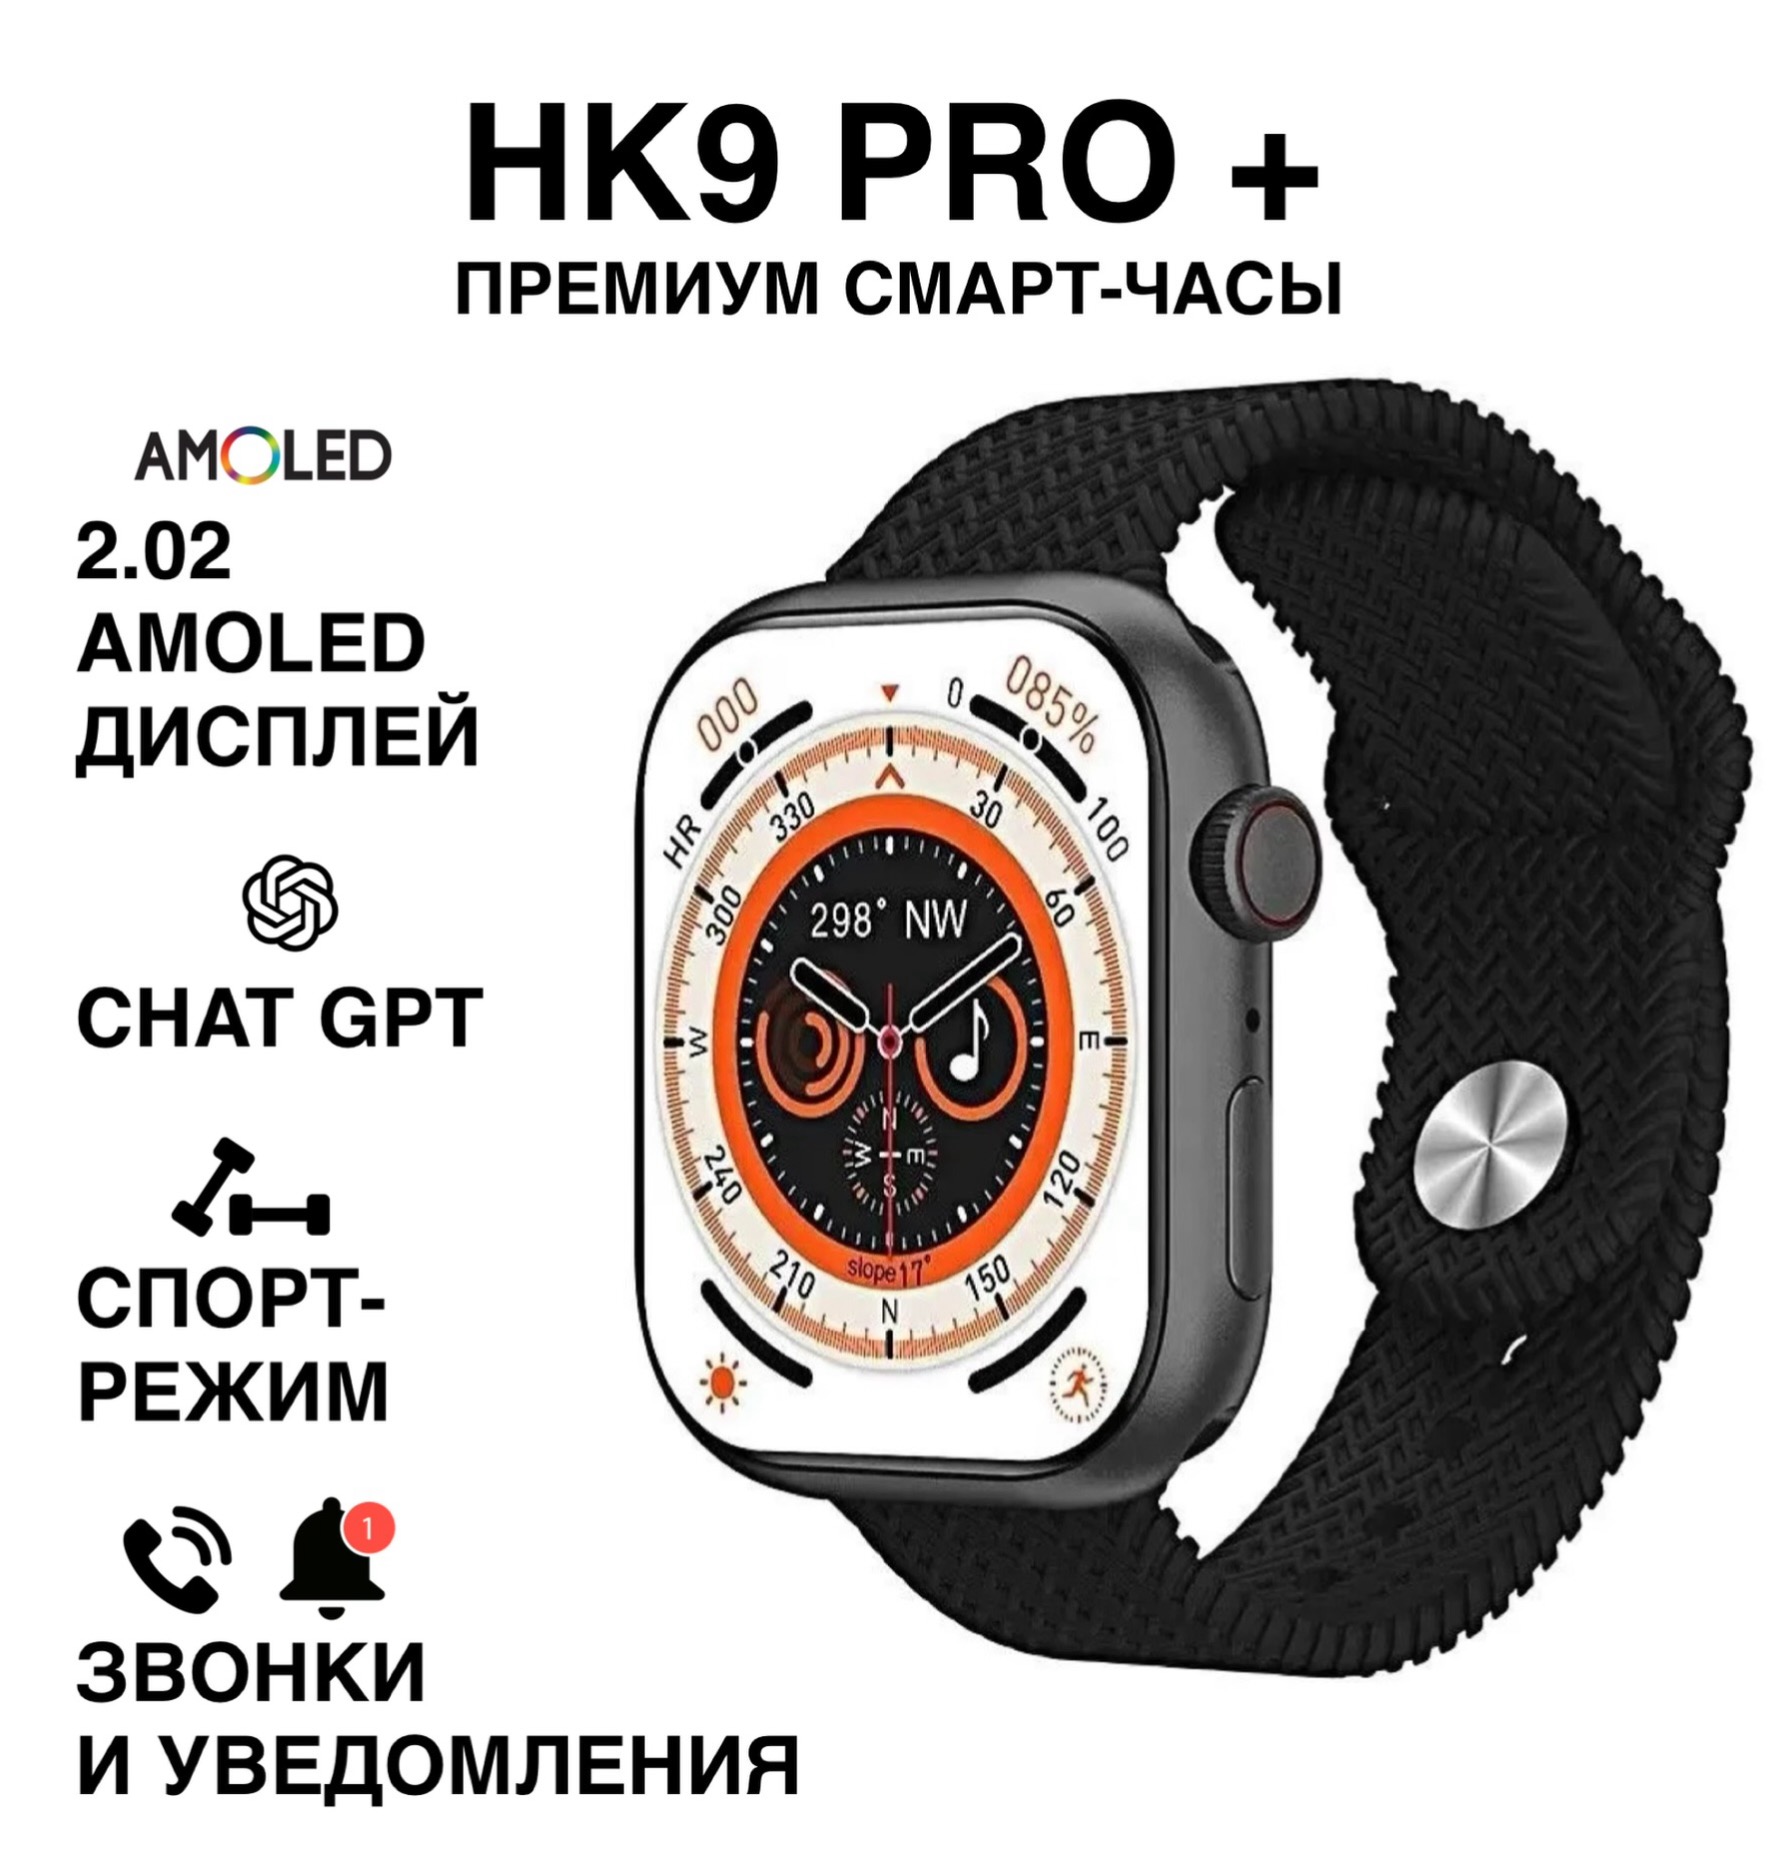 Смарт-часы HK 9 PRO PLUS 45mm Amoled-экран, купить в Москве, цены в интернет-магазинах на Мегамаркет